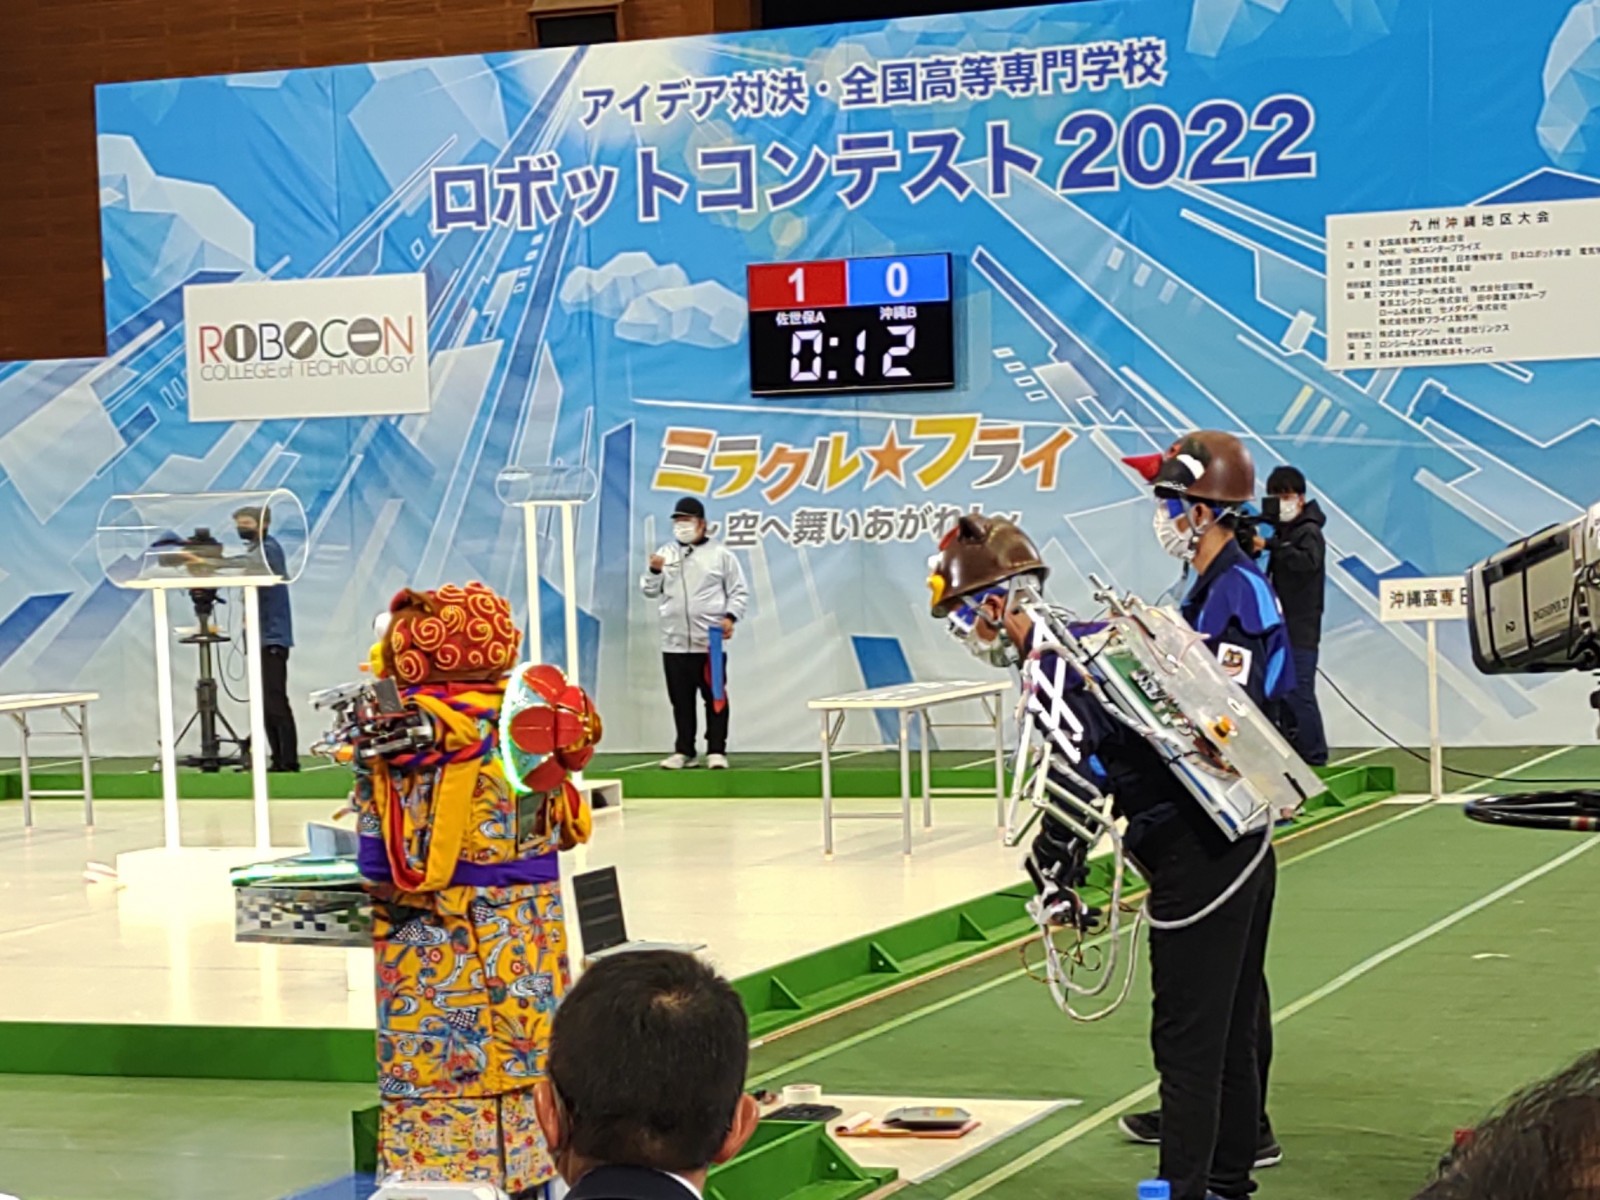 沖縄高専が出場する高専ロボコン全国大会2022が放送されます！の写真